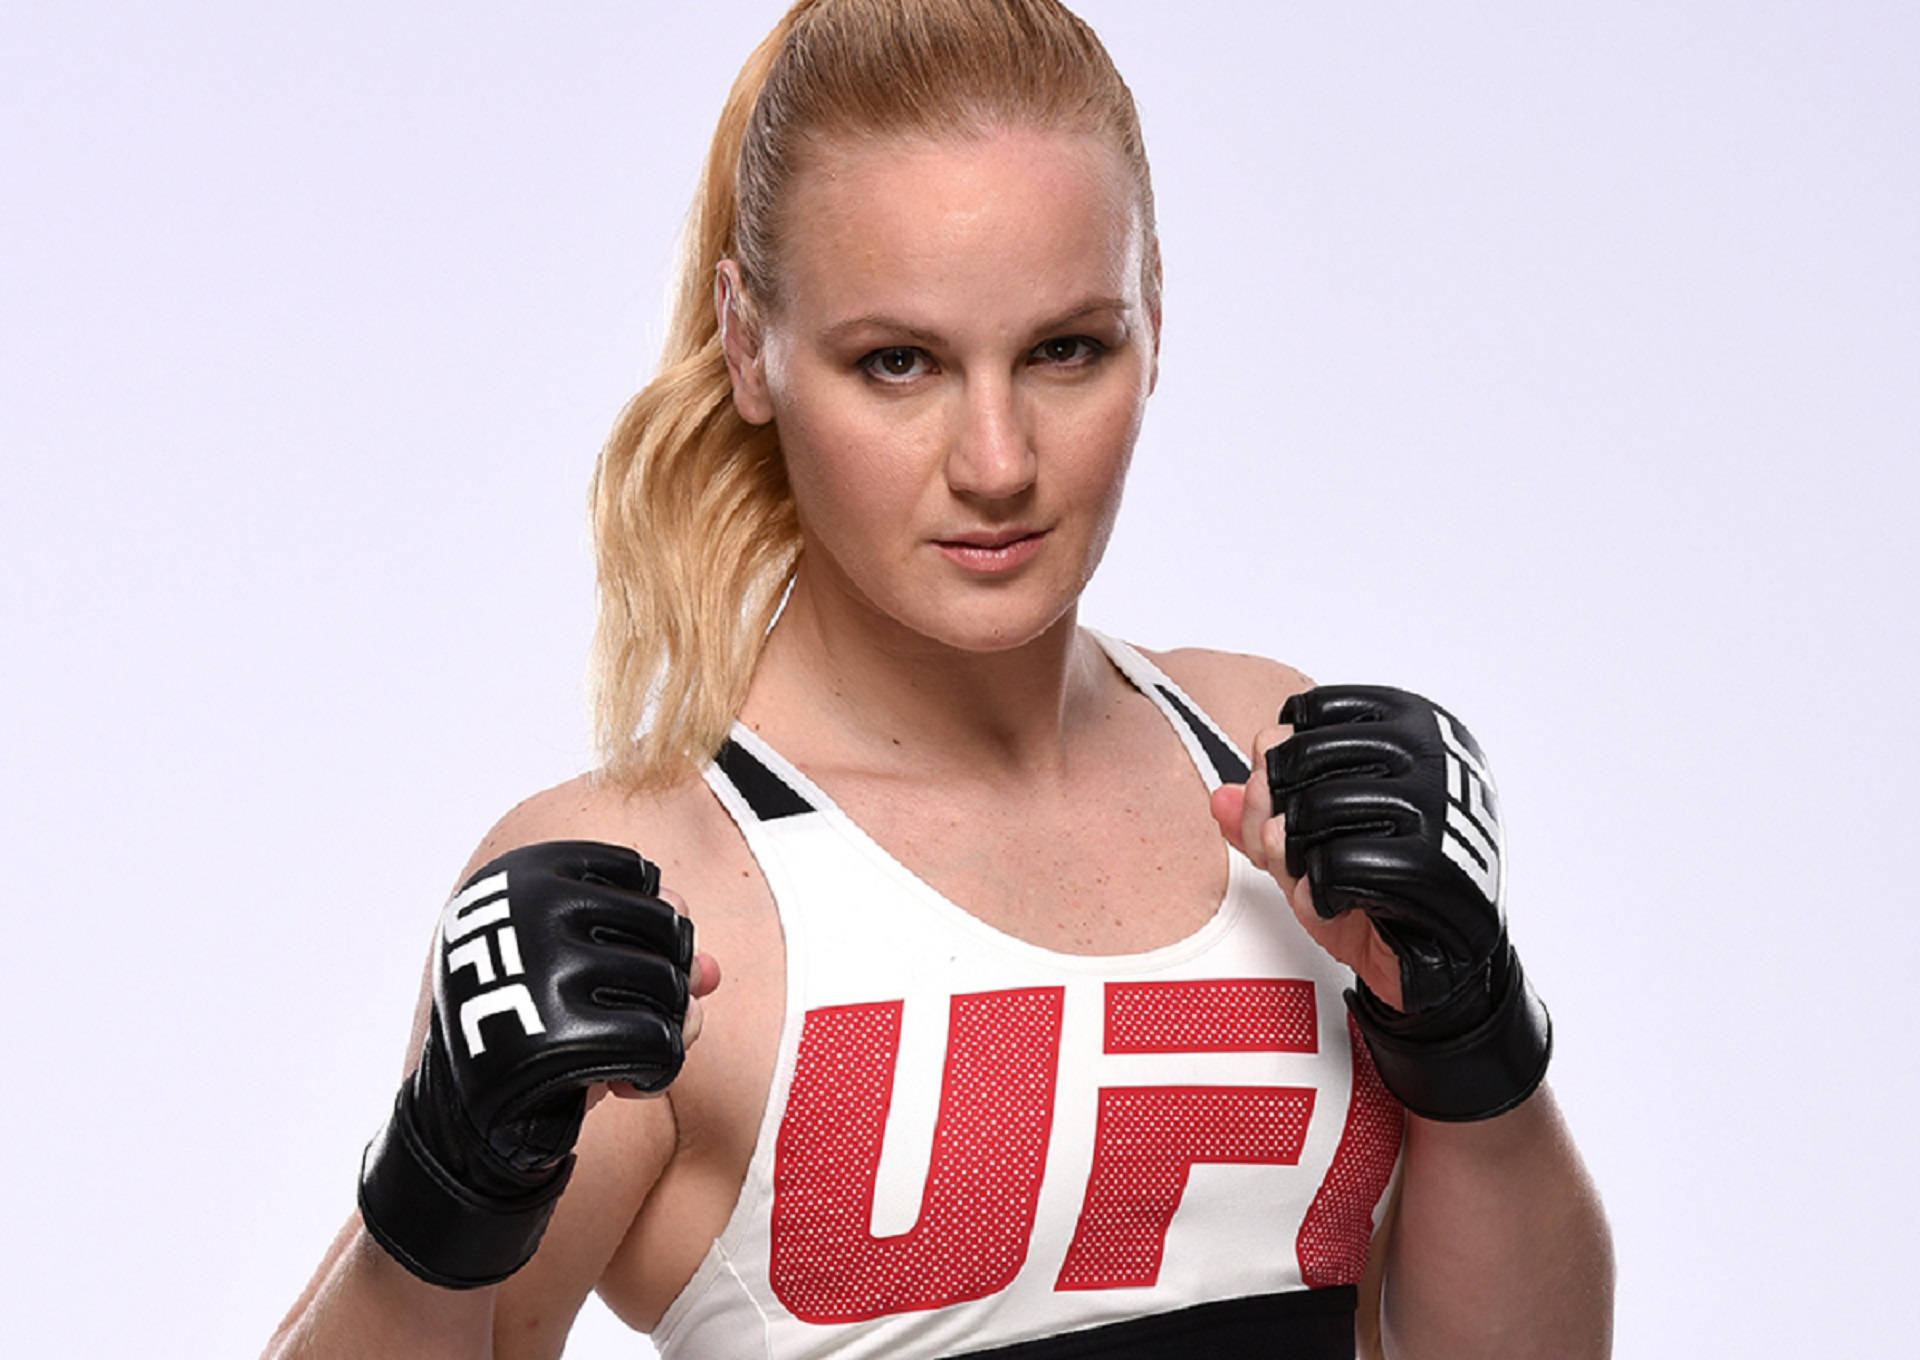 Valentina Shevchenko UFC Fighter Portrait Wallpaper